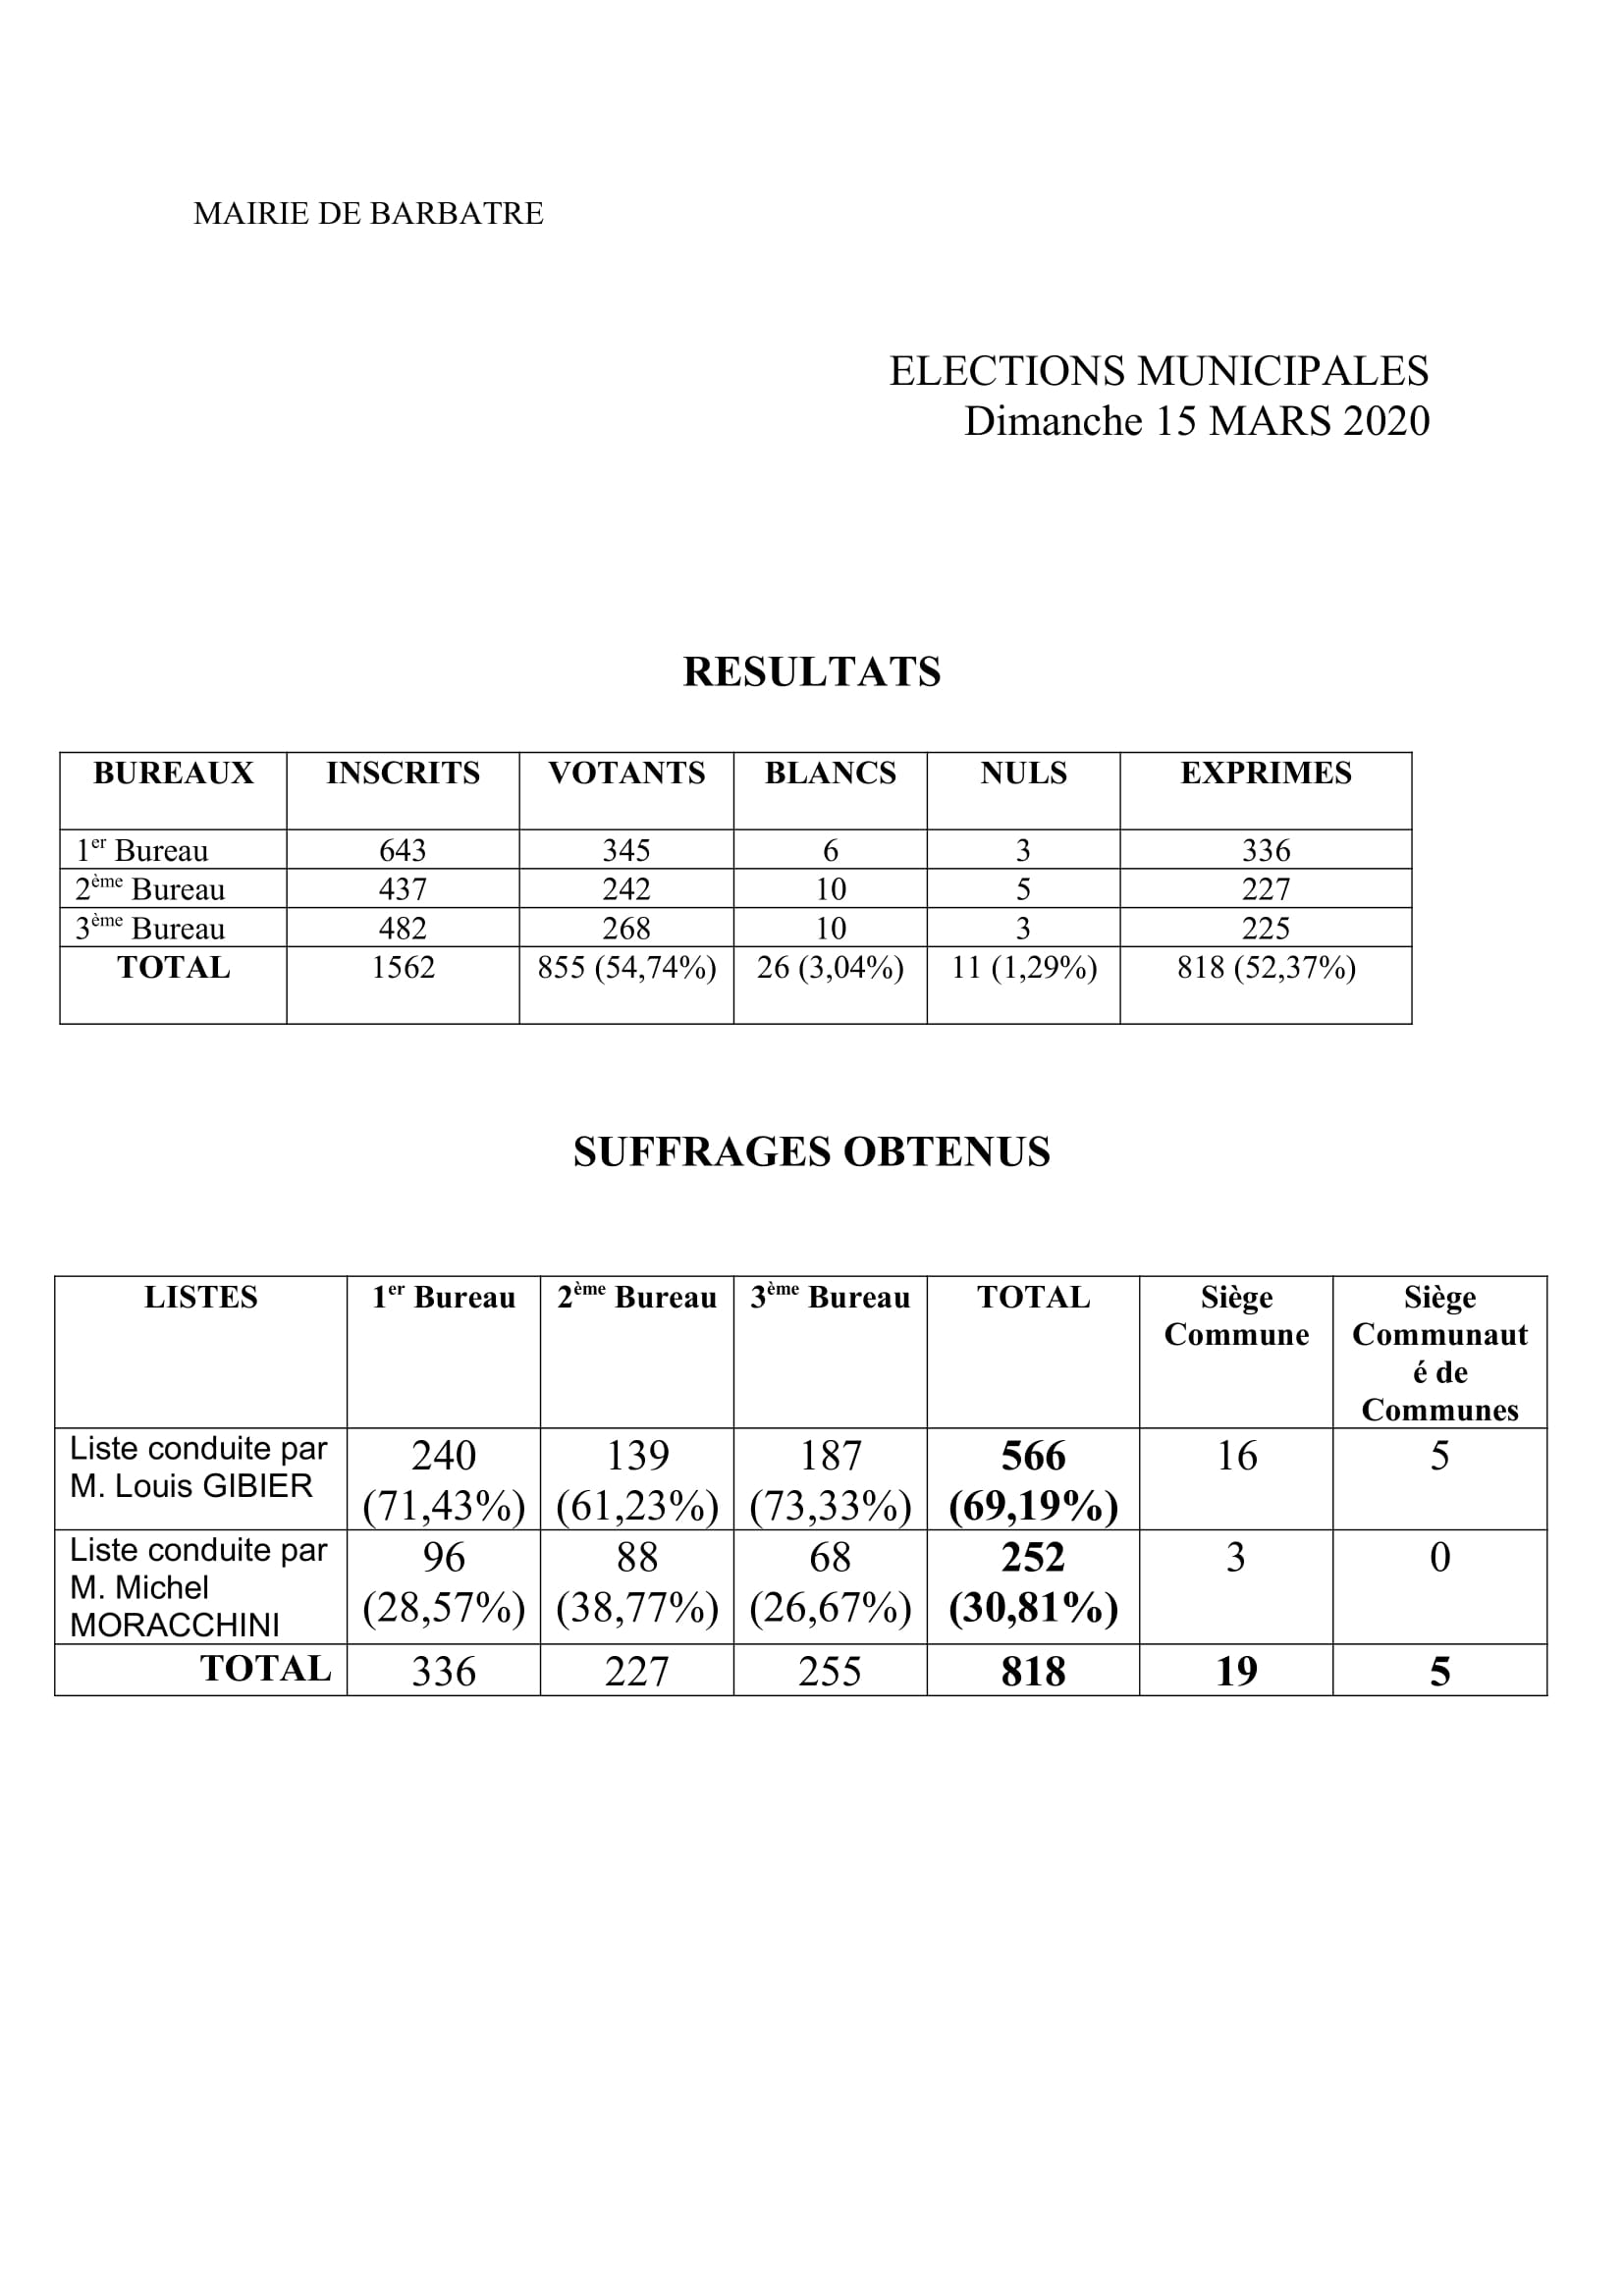 Résultats des élections Municipales par bureaux de vote